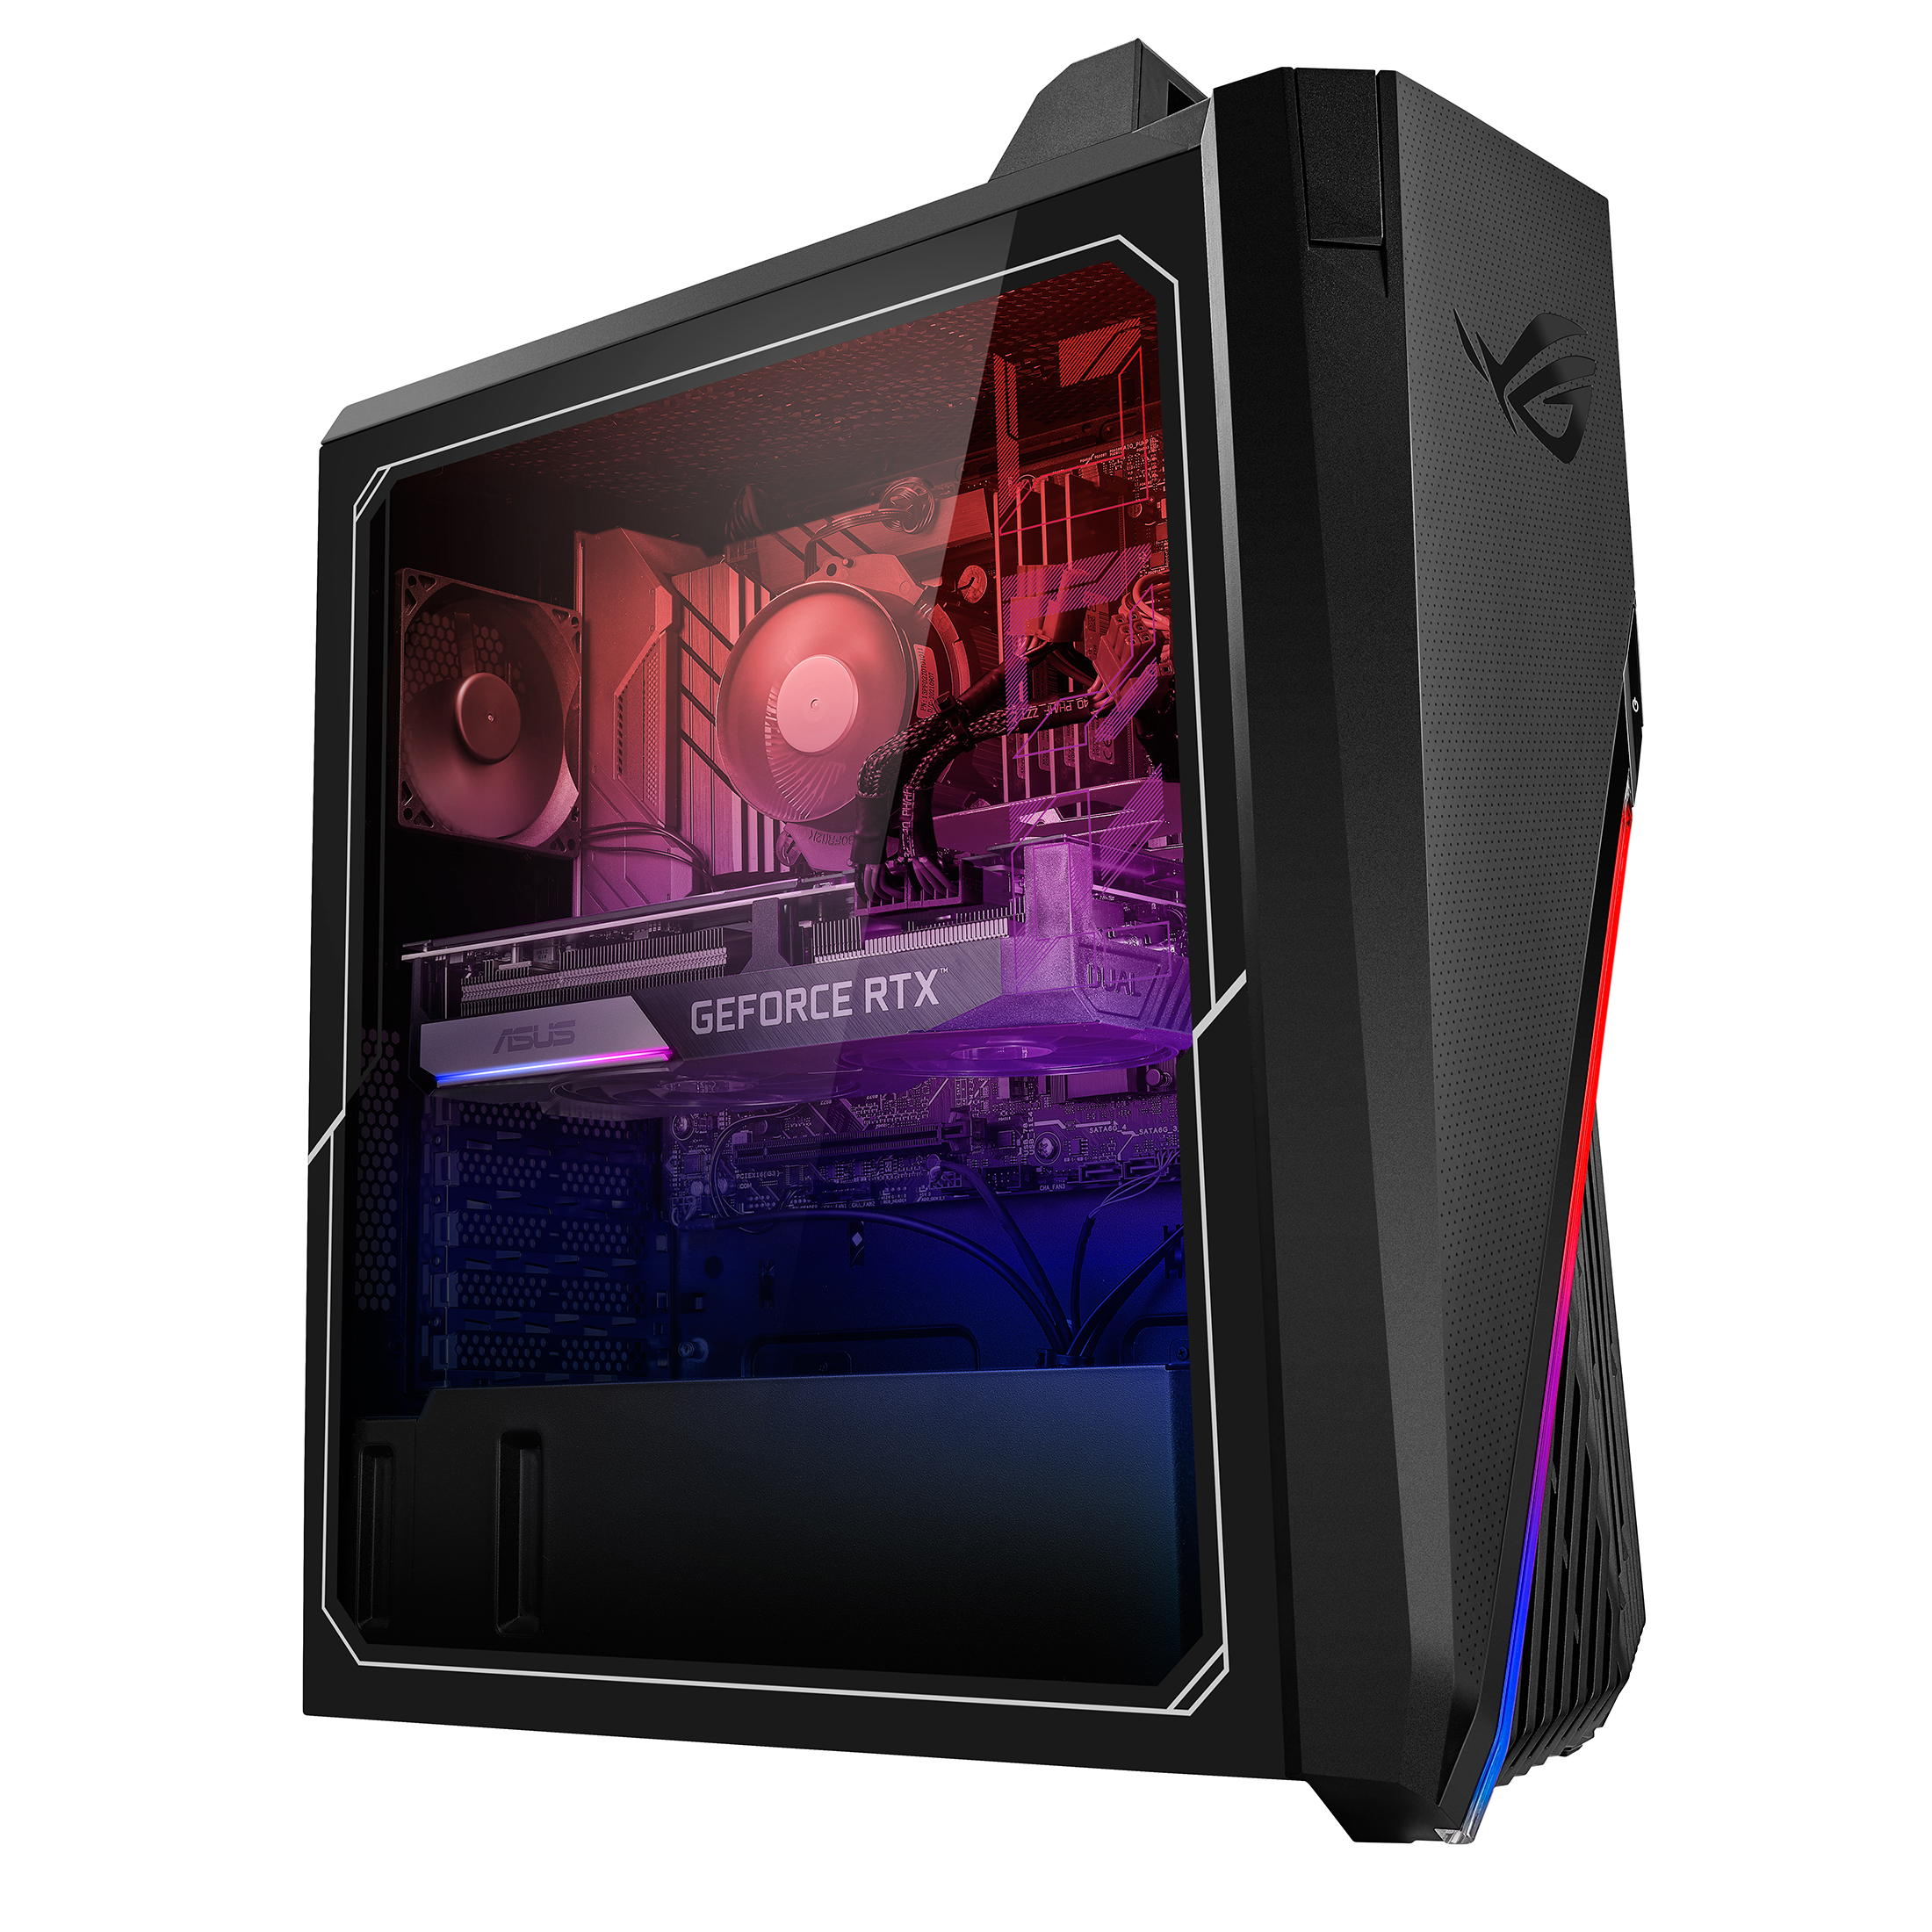 ASUS ROG Strix GT15 Gaming Desktop: Intel Core i7-12700F, nVidia GeForce RTX 3080, 16GB DDR4, 1TB SSD, Win 11 $999 + Free Shipping @ Walmart